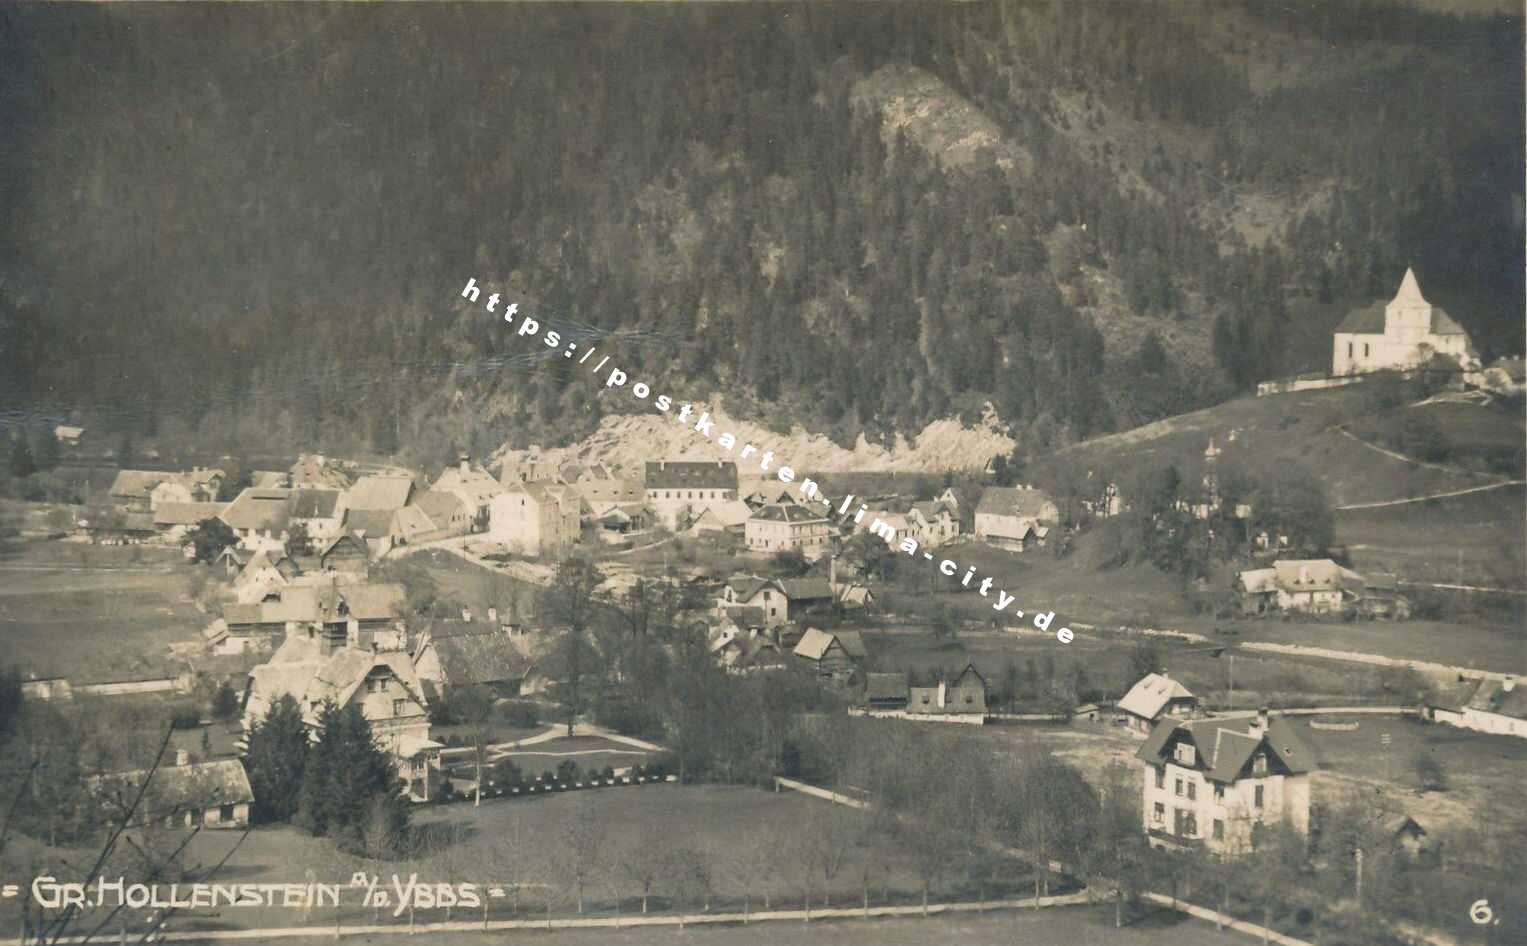 Groß Hollenstein 1927